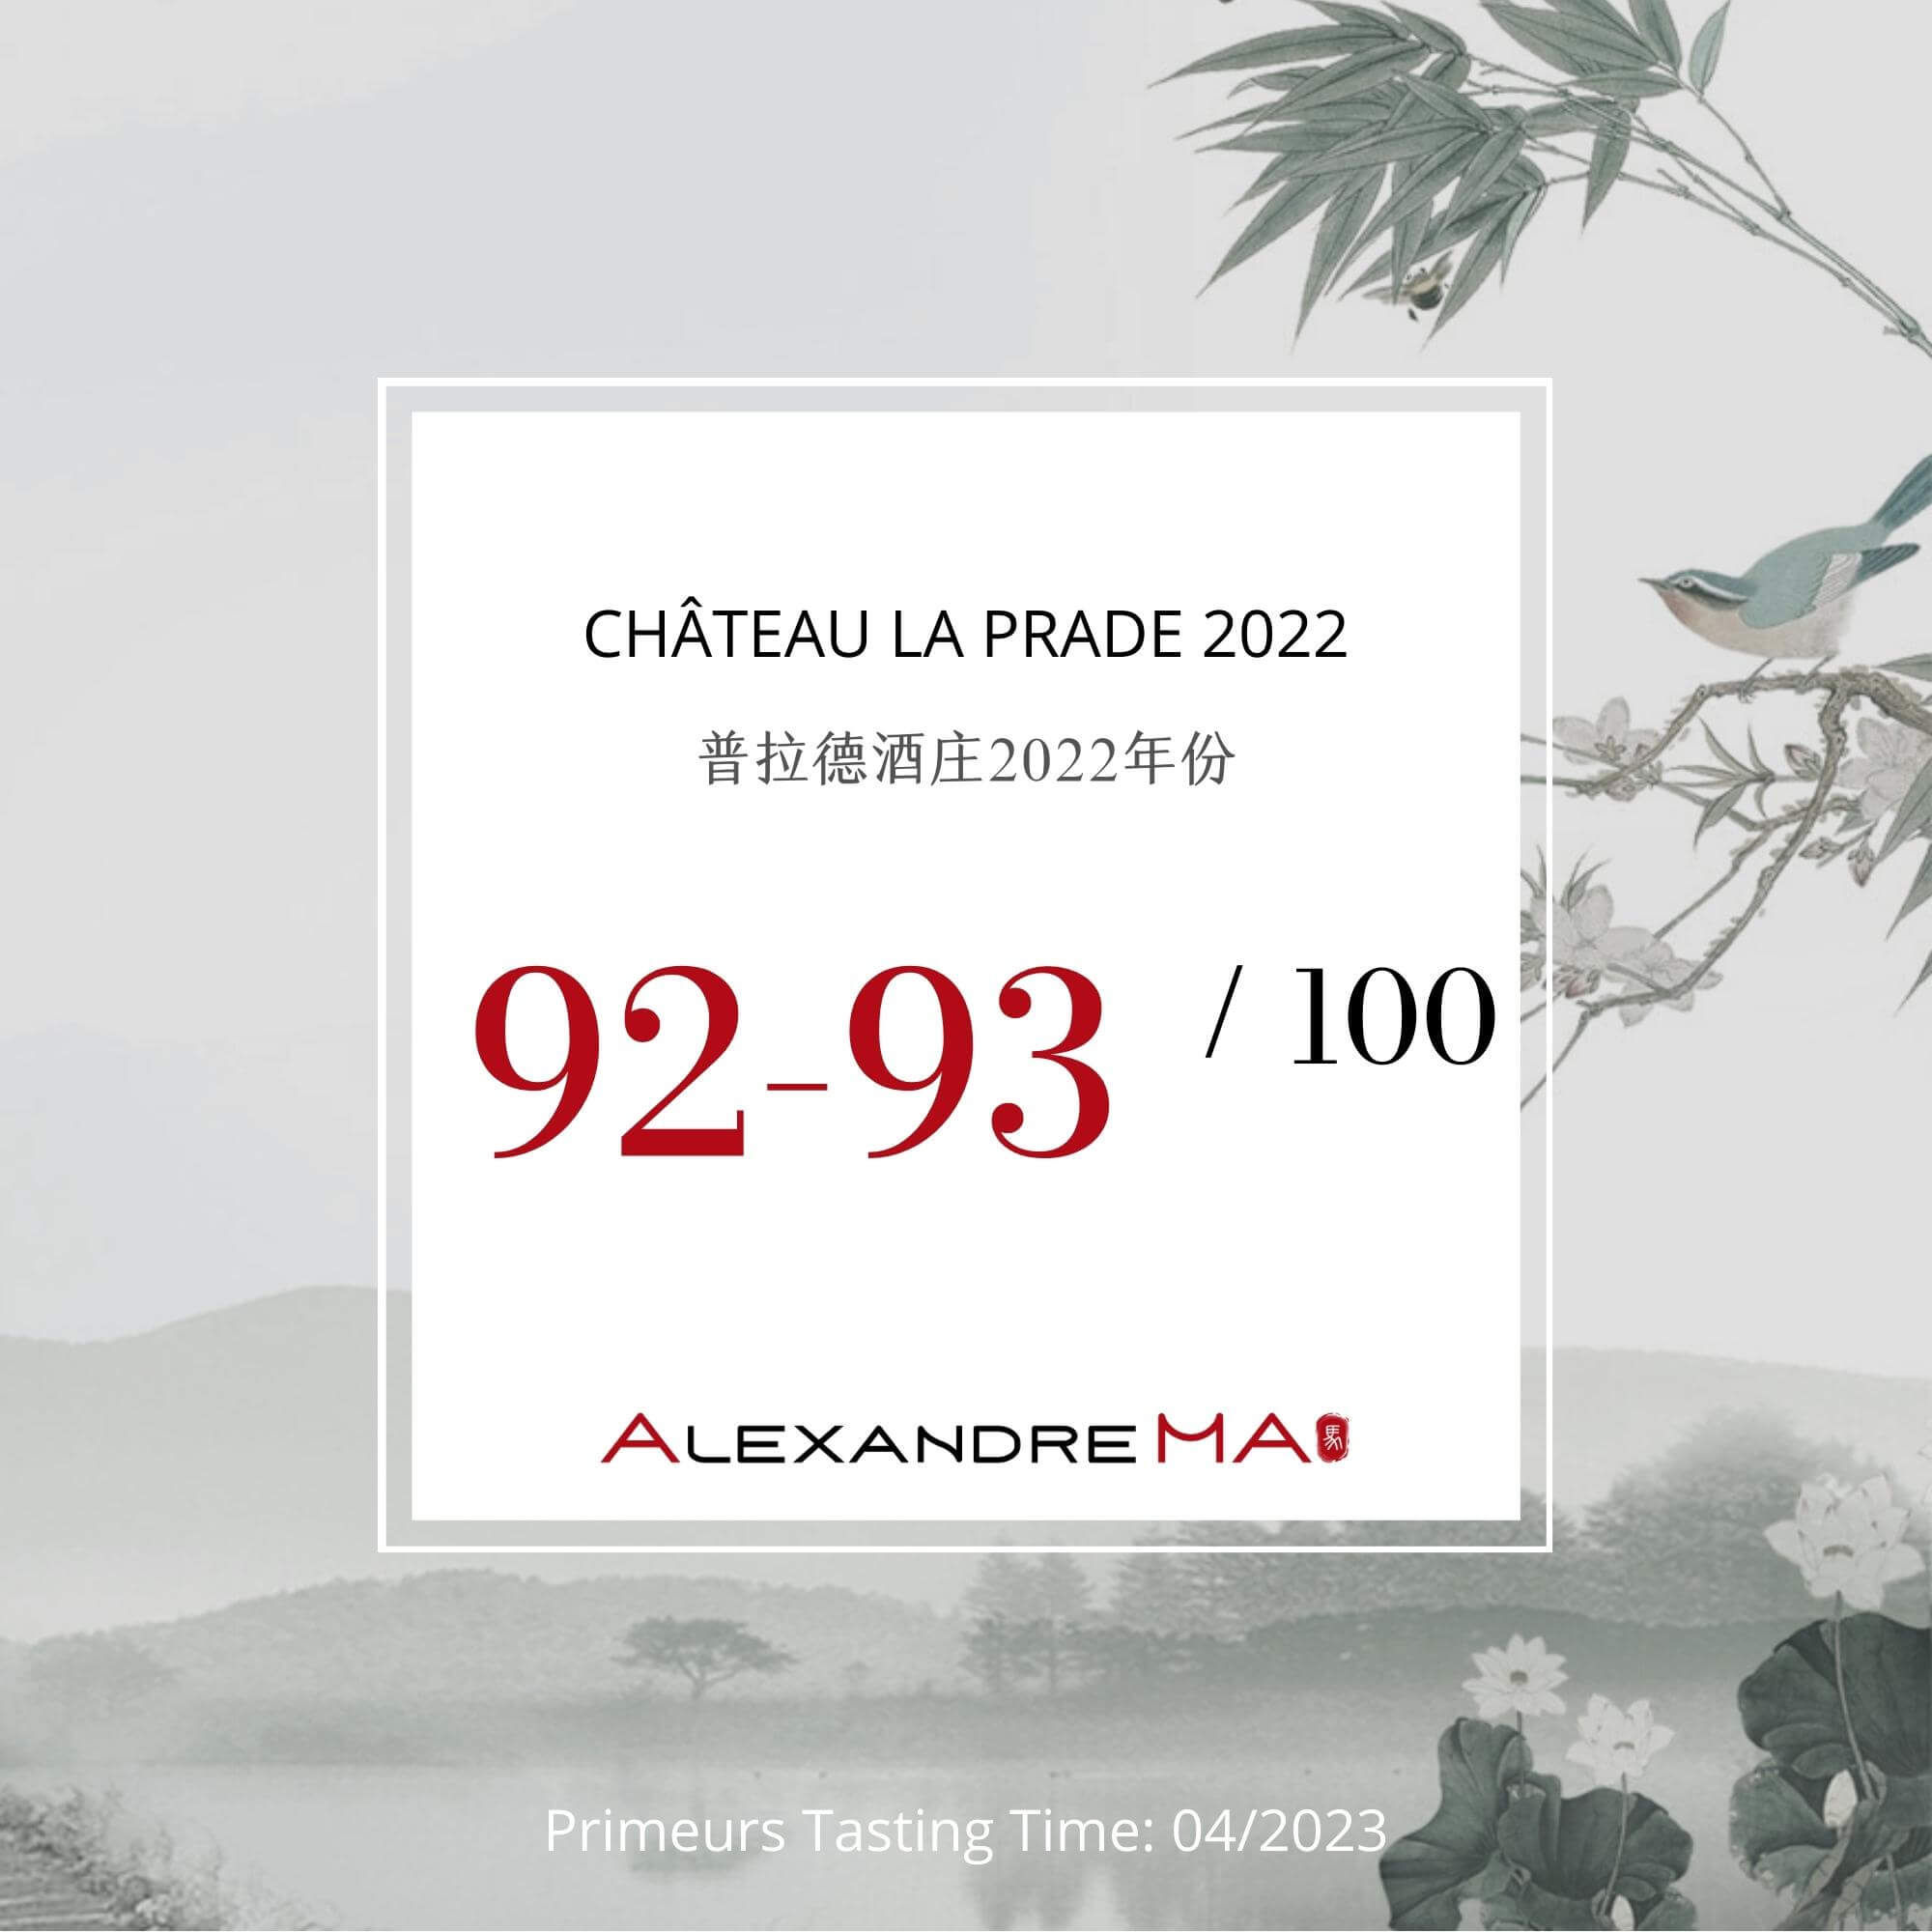 Château La Prade 2022 Primeurs - Alexandre MA